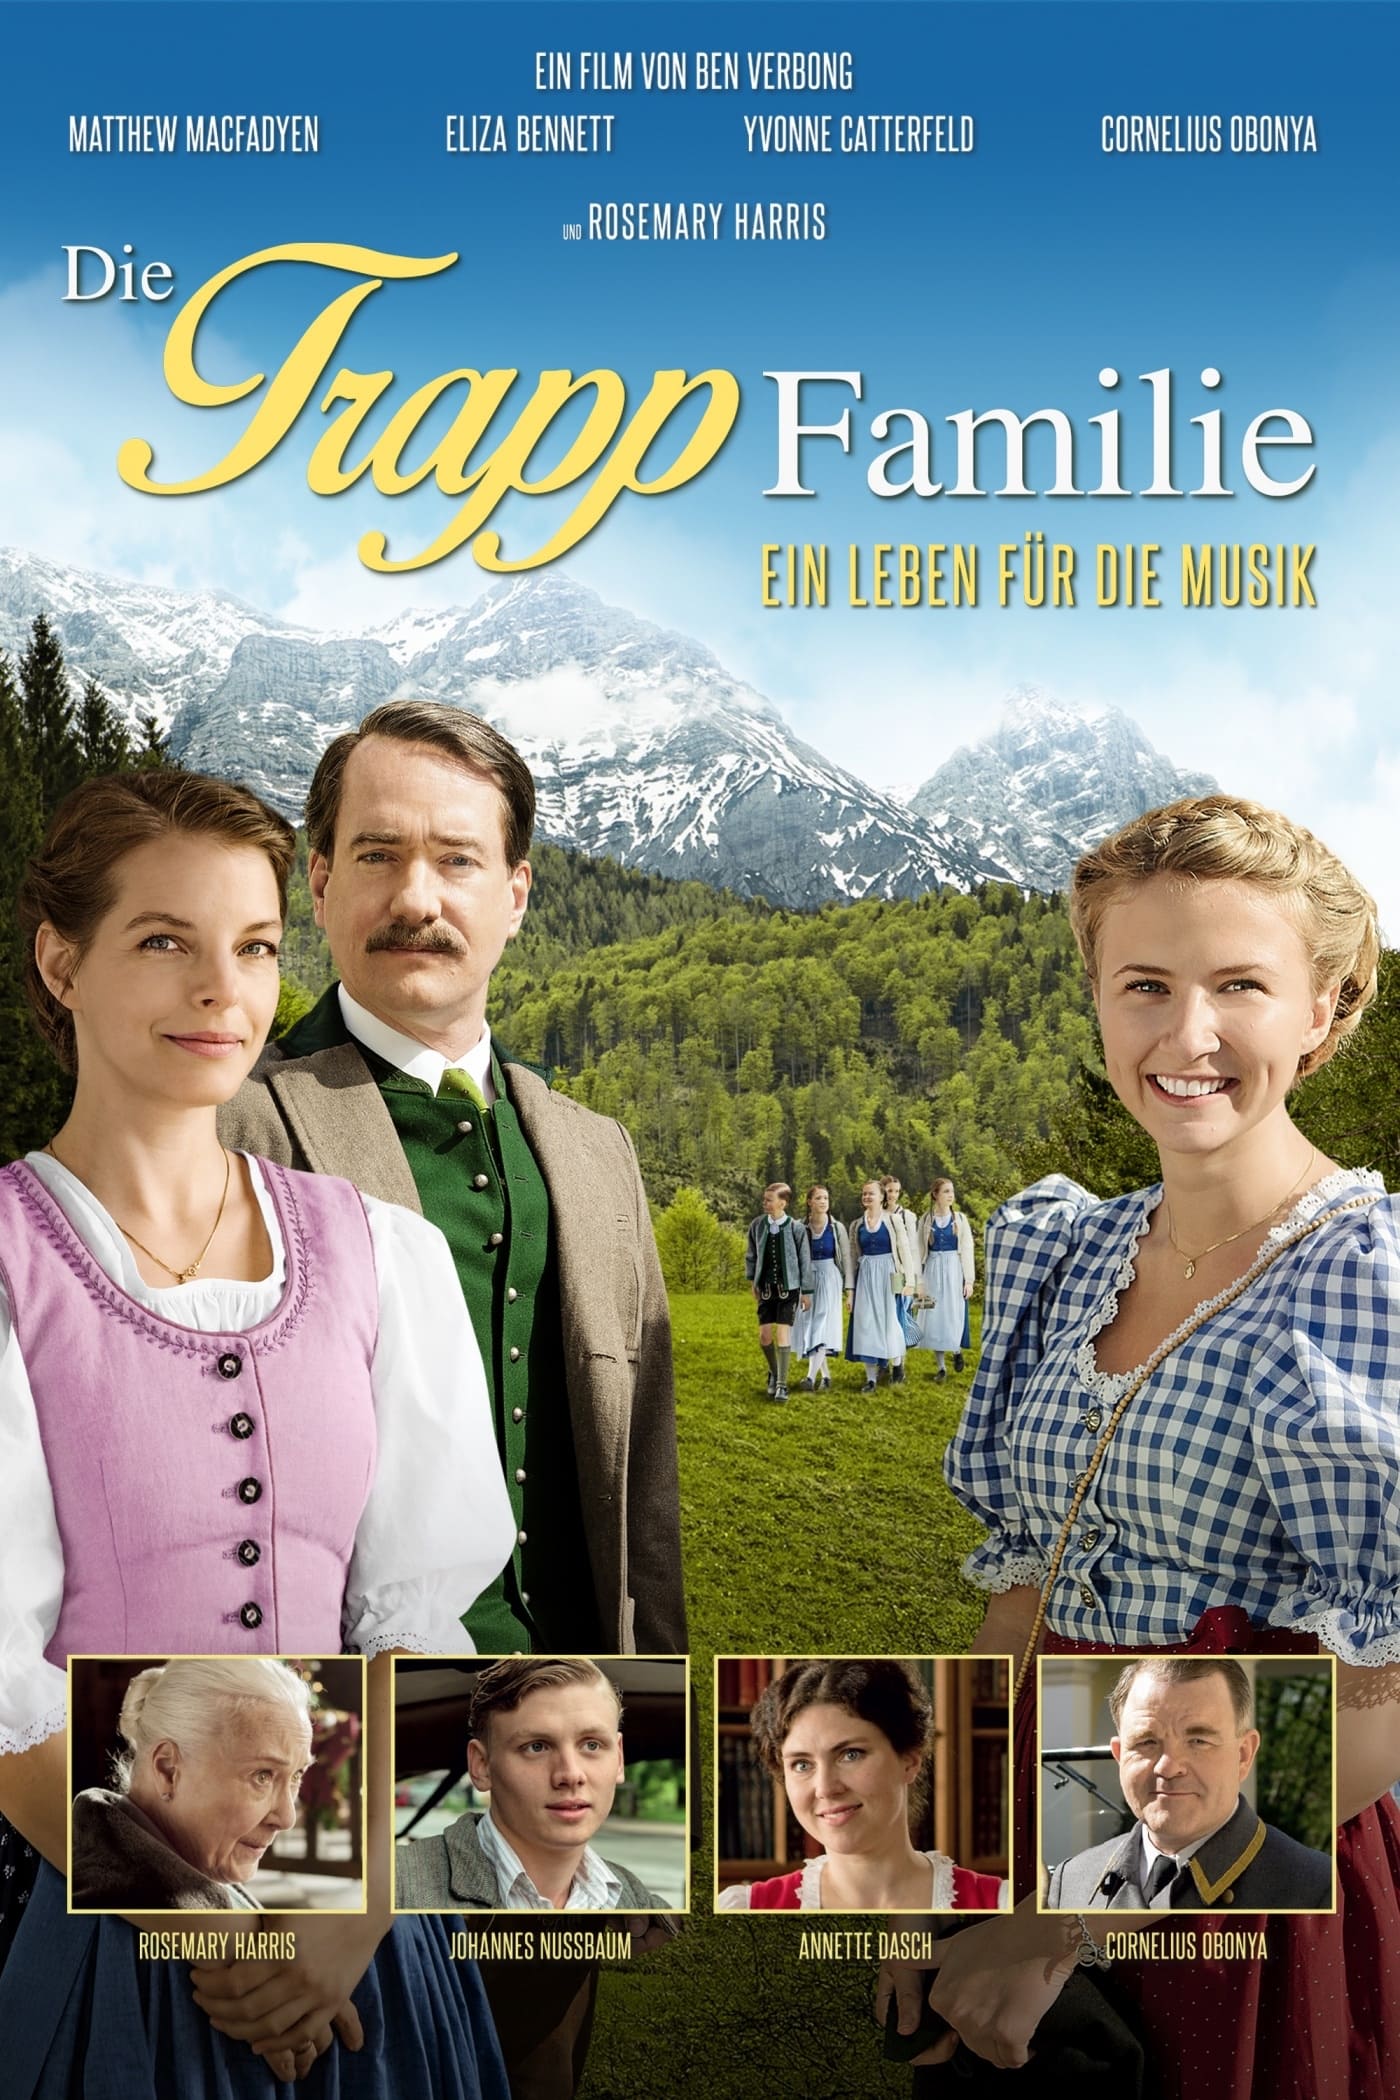 La famiglia von Trapp - Una vita in musica film